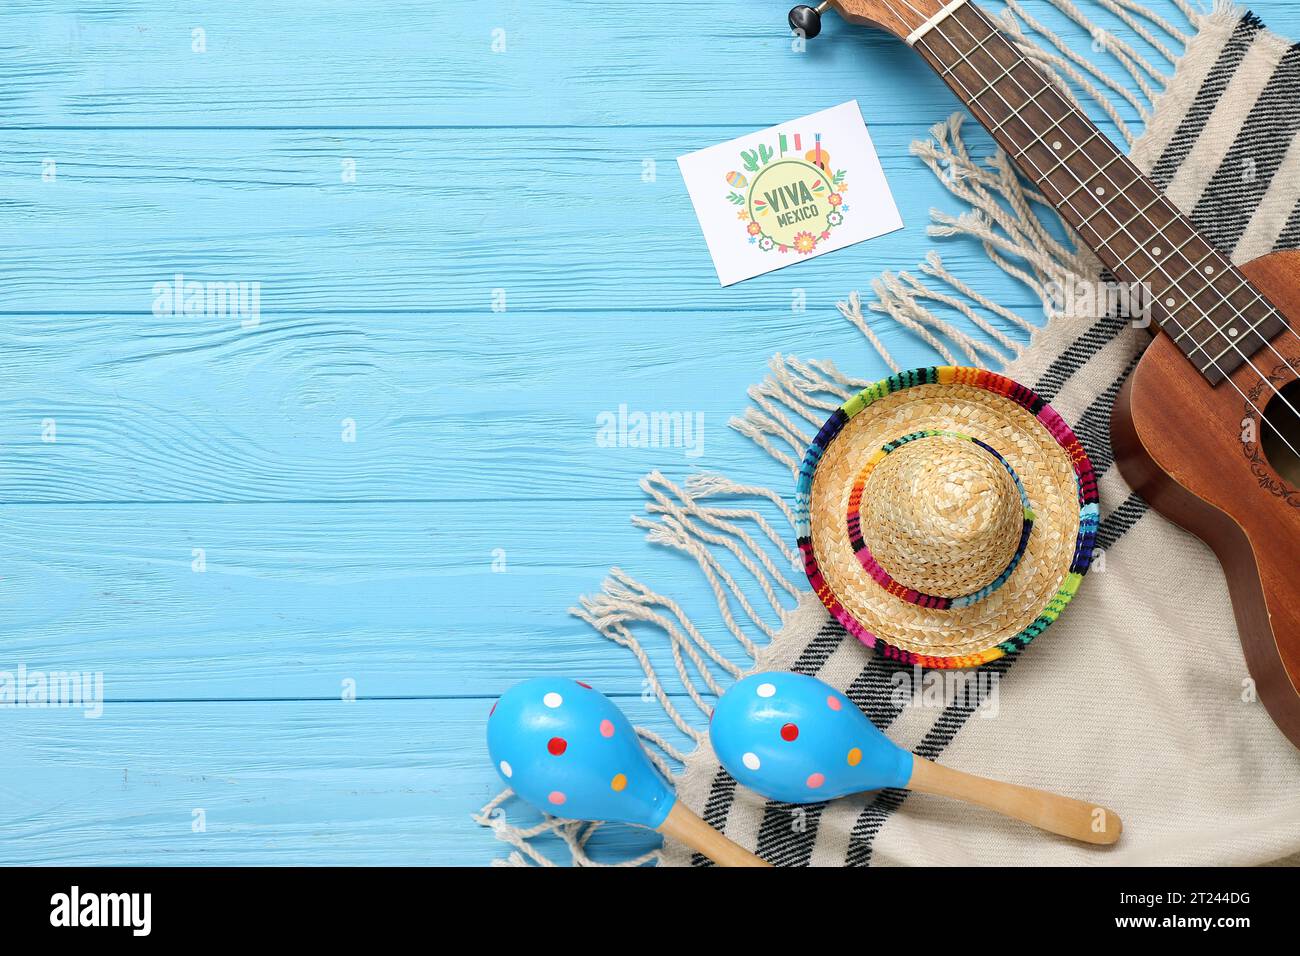 Carte de voeux avec texte Viva MEXICO, maracas, sombrero et ukulele sur fond en bois bleu Banque D'Images